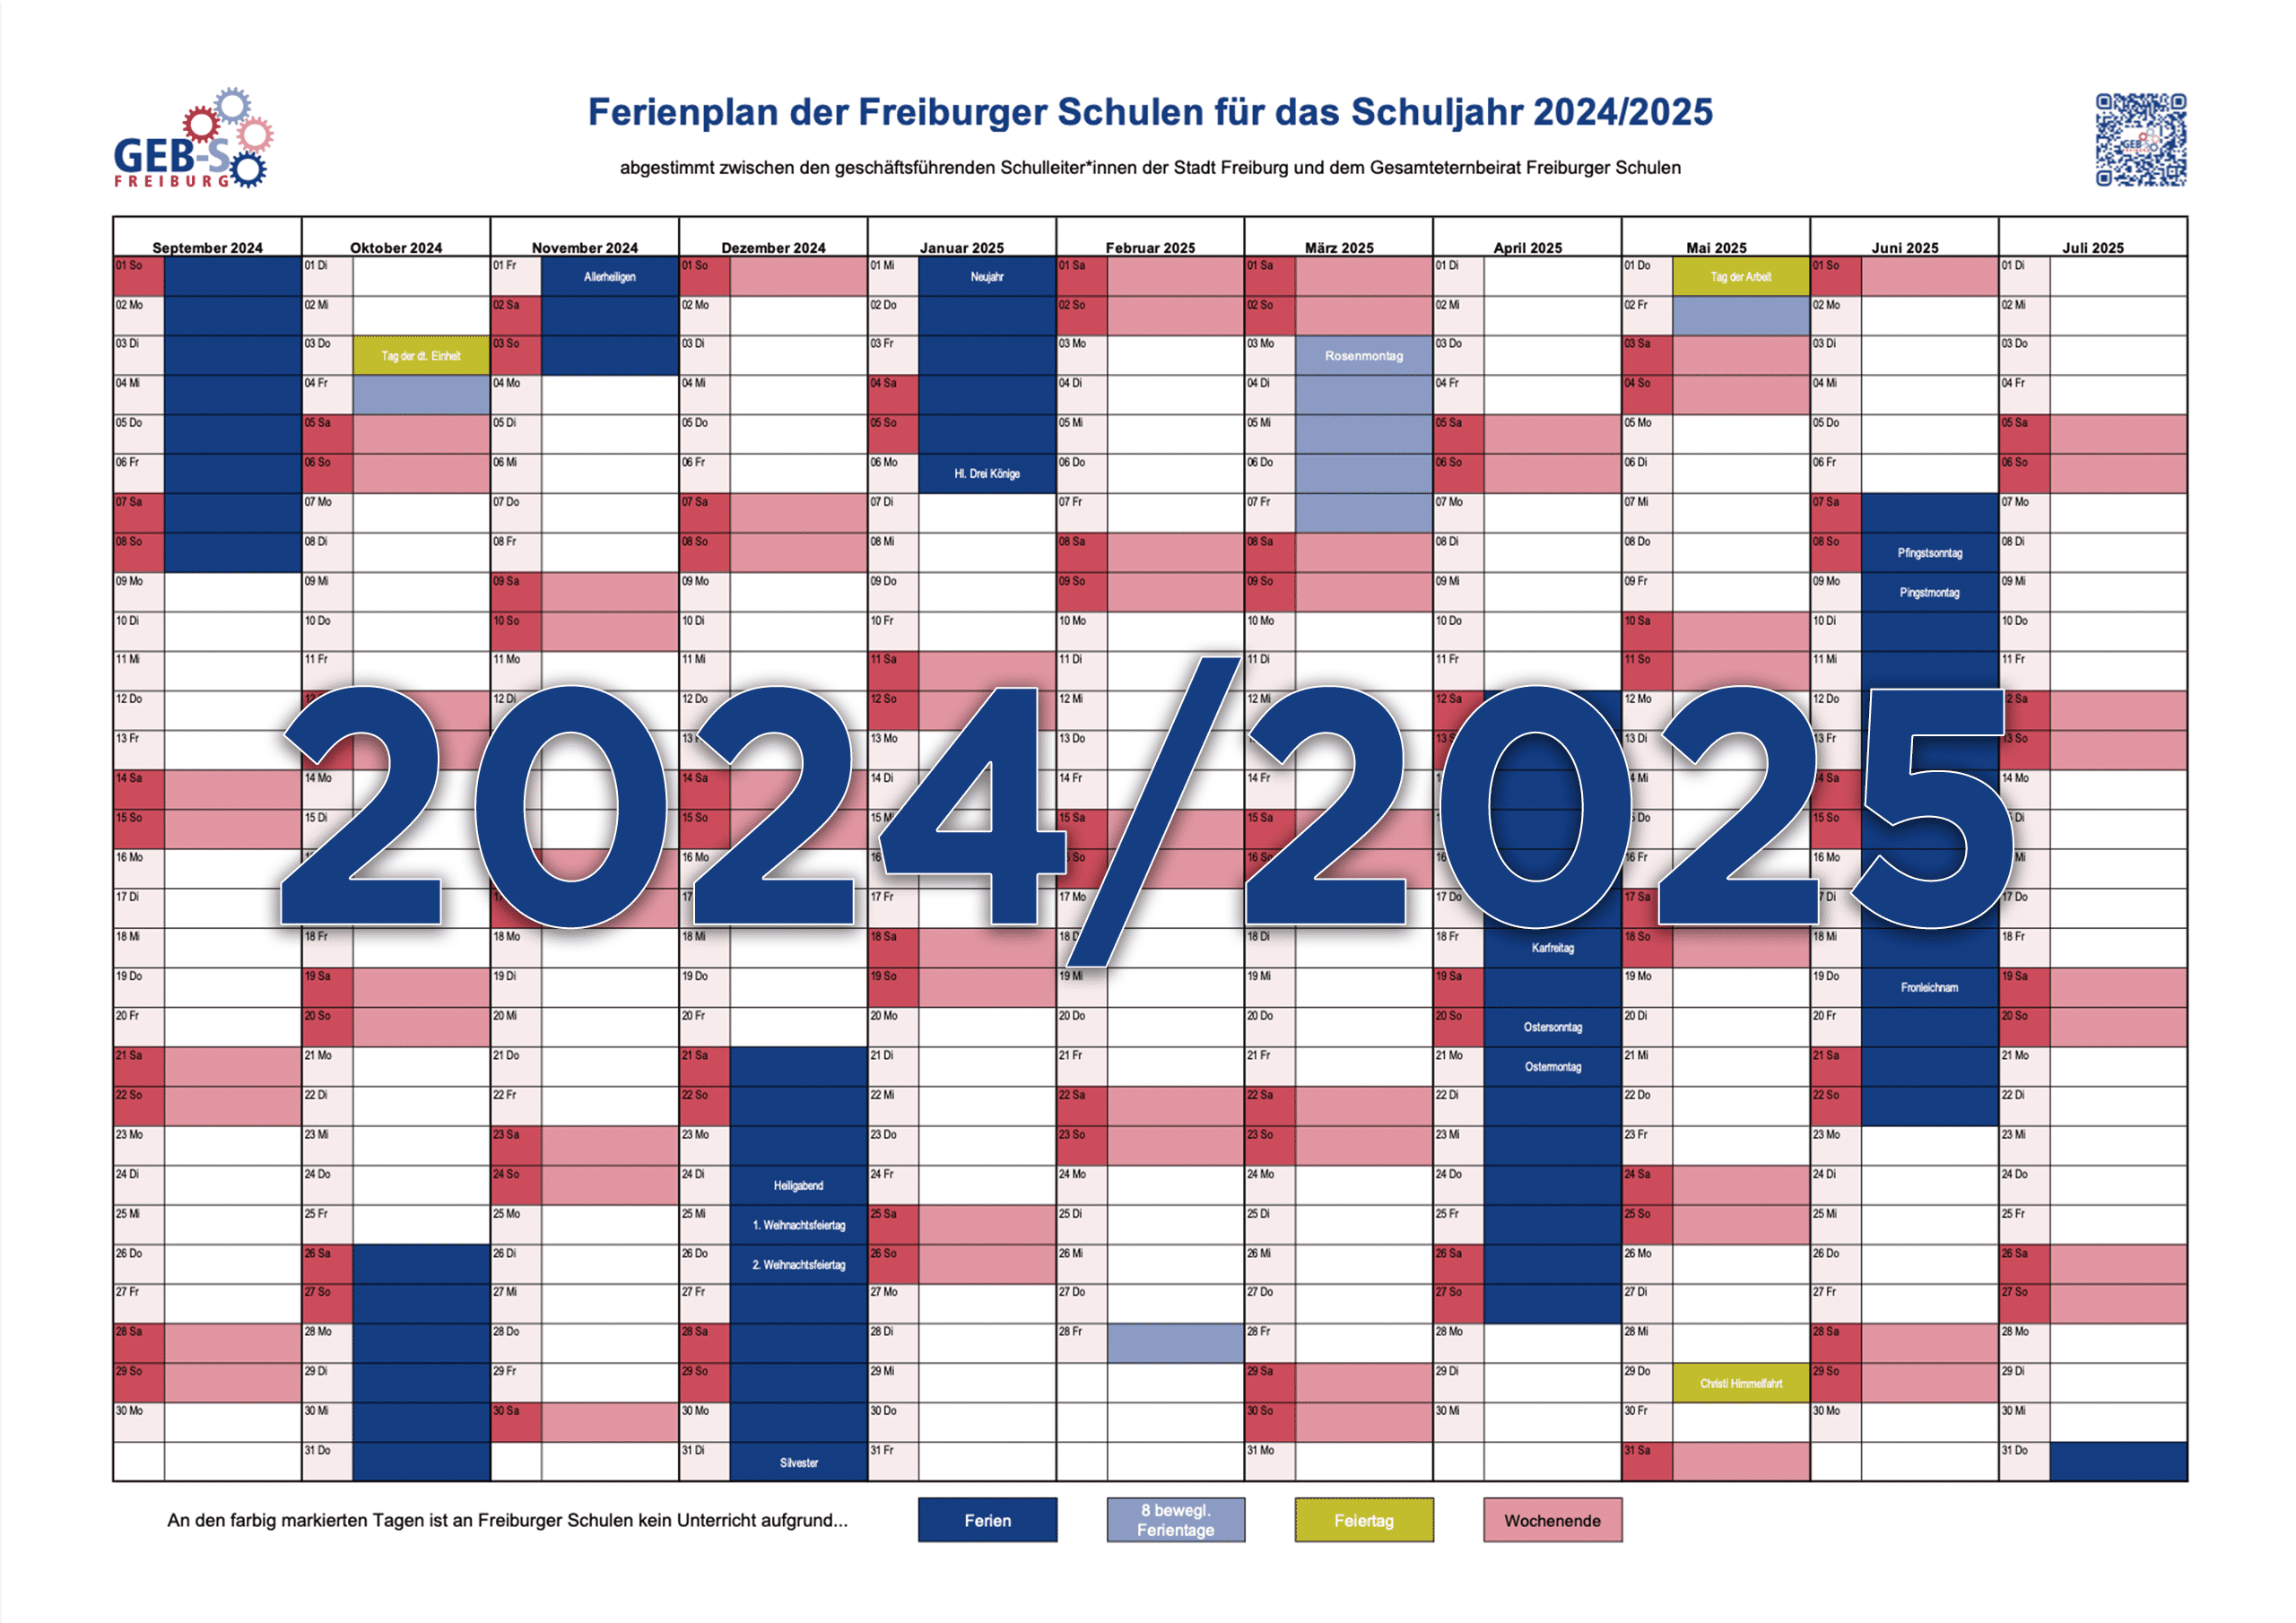 Alle Schulferien in Freiburg in unserem Ferienkalender für das Schuljahr 2024/2025